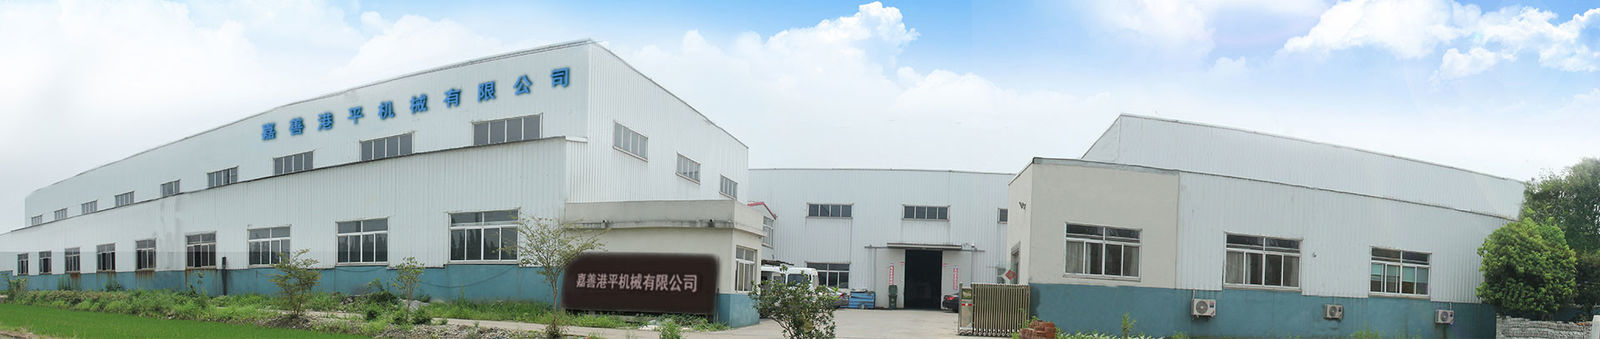 Trung Quốc Jiashan Gangping Machinery Co., Ltd. hồ sơ công ty